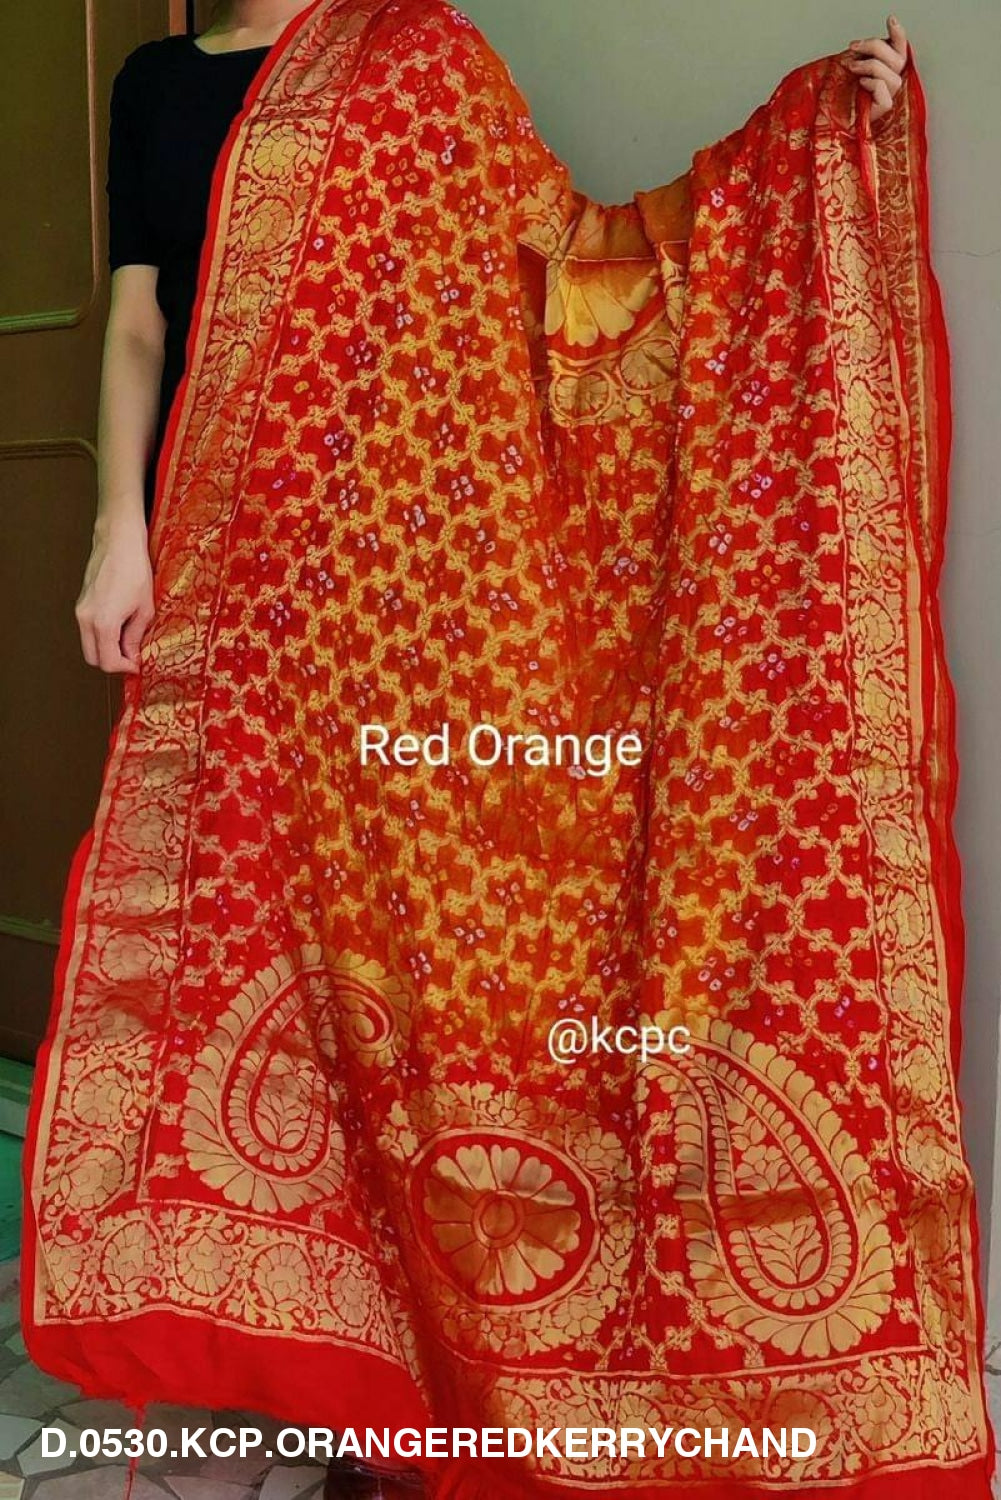 Banarasi Bandhej Gharchola Dupattas Or Kc Orange Red Kerry Chand Dupatta